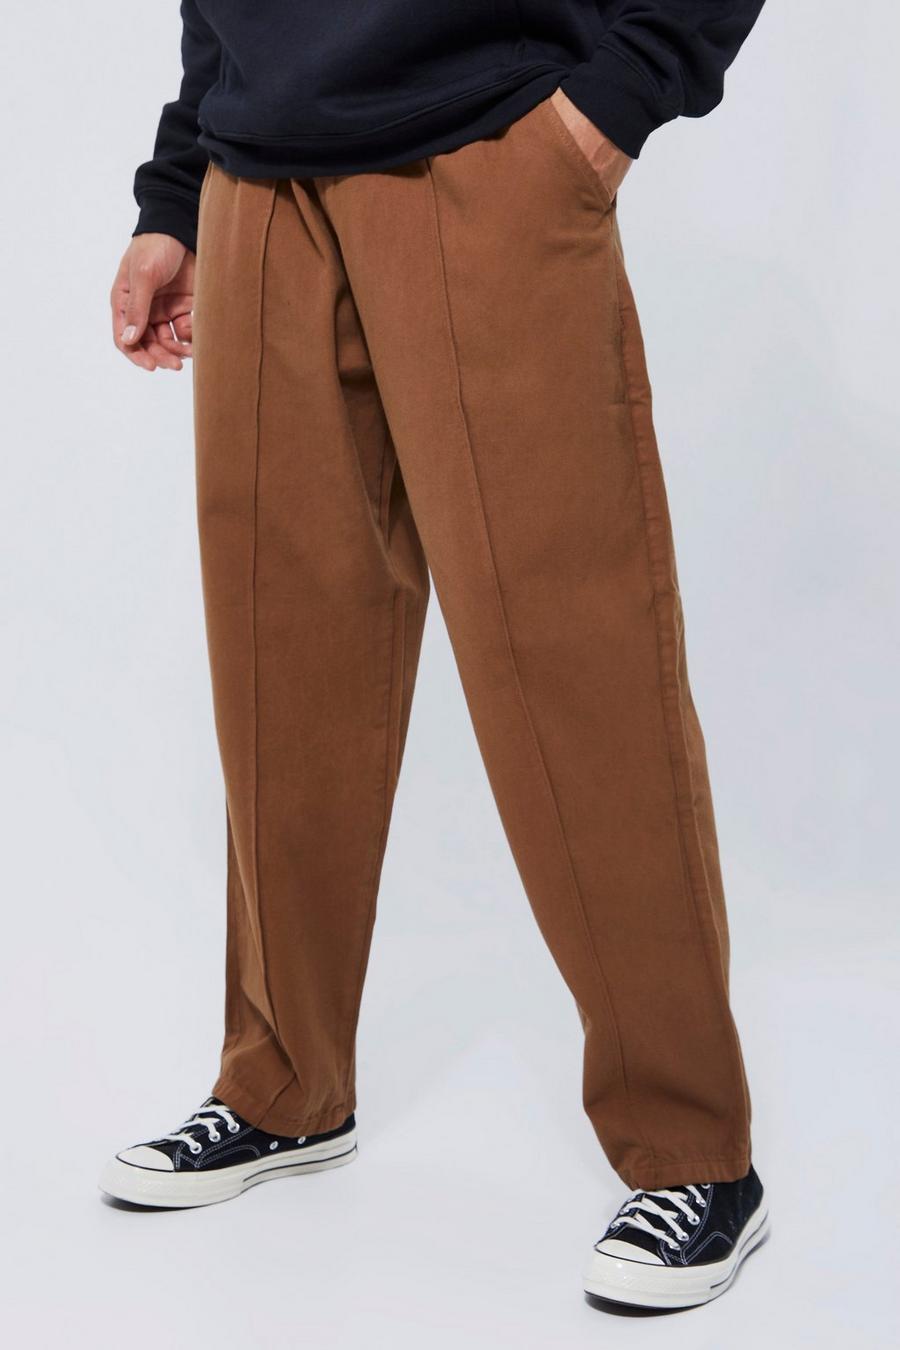 Pantalón Tall aterciopelado sobreteñido estilo skate, Tan marrón